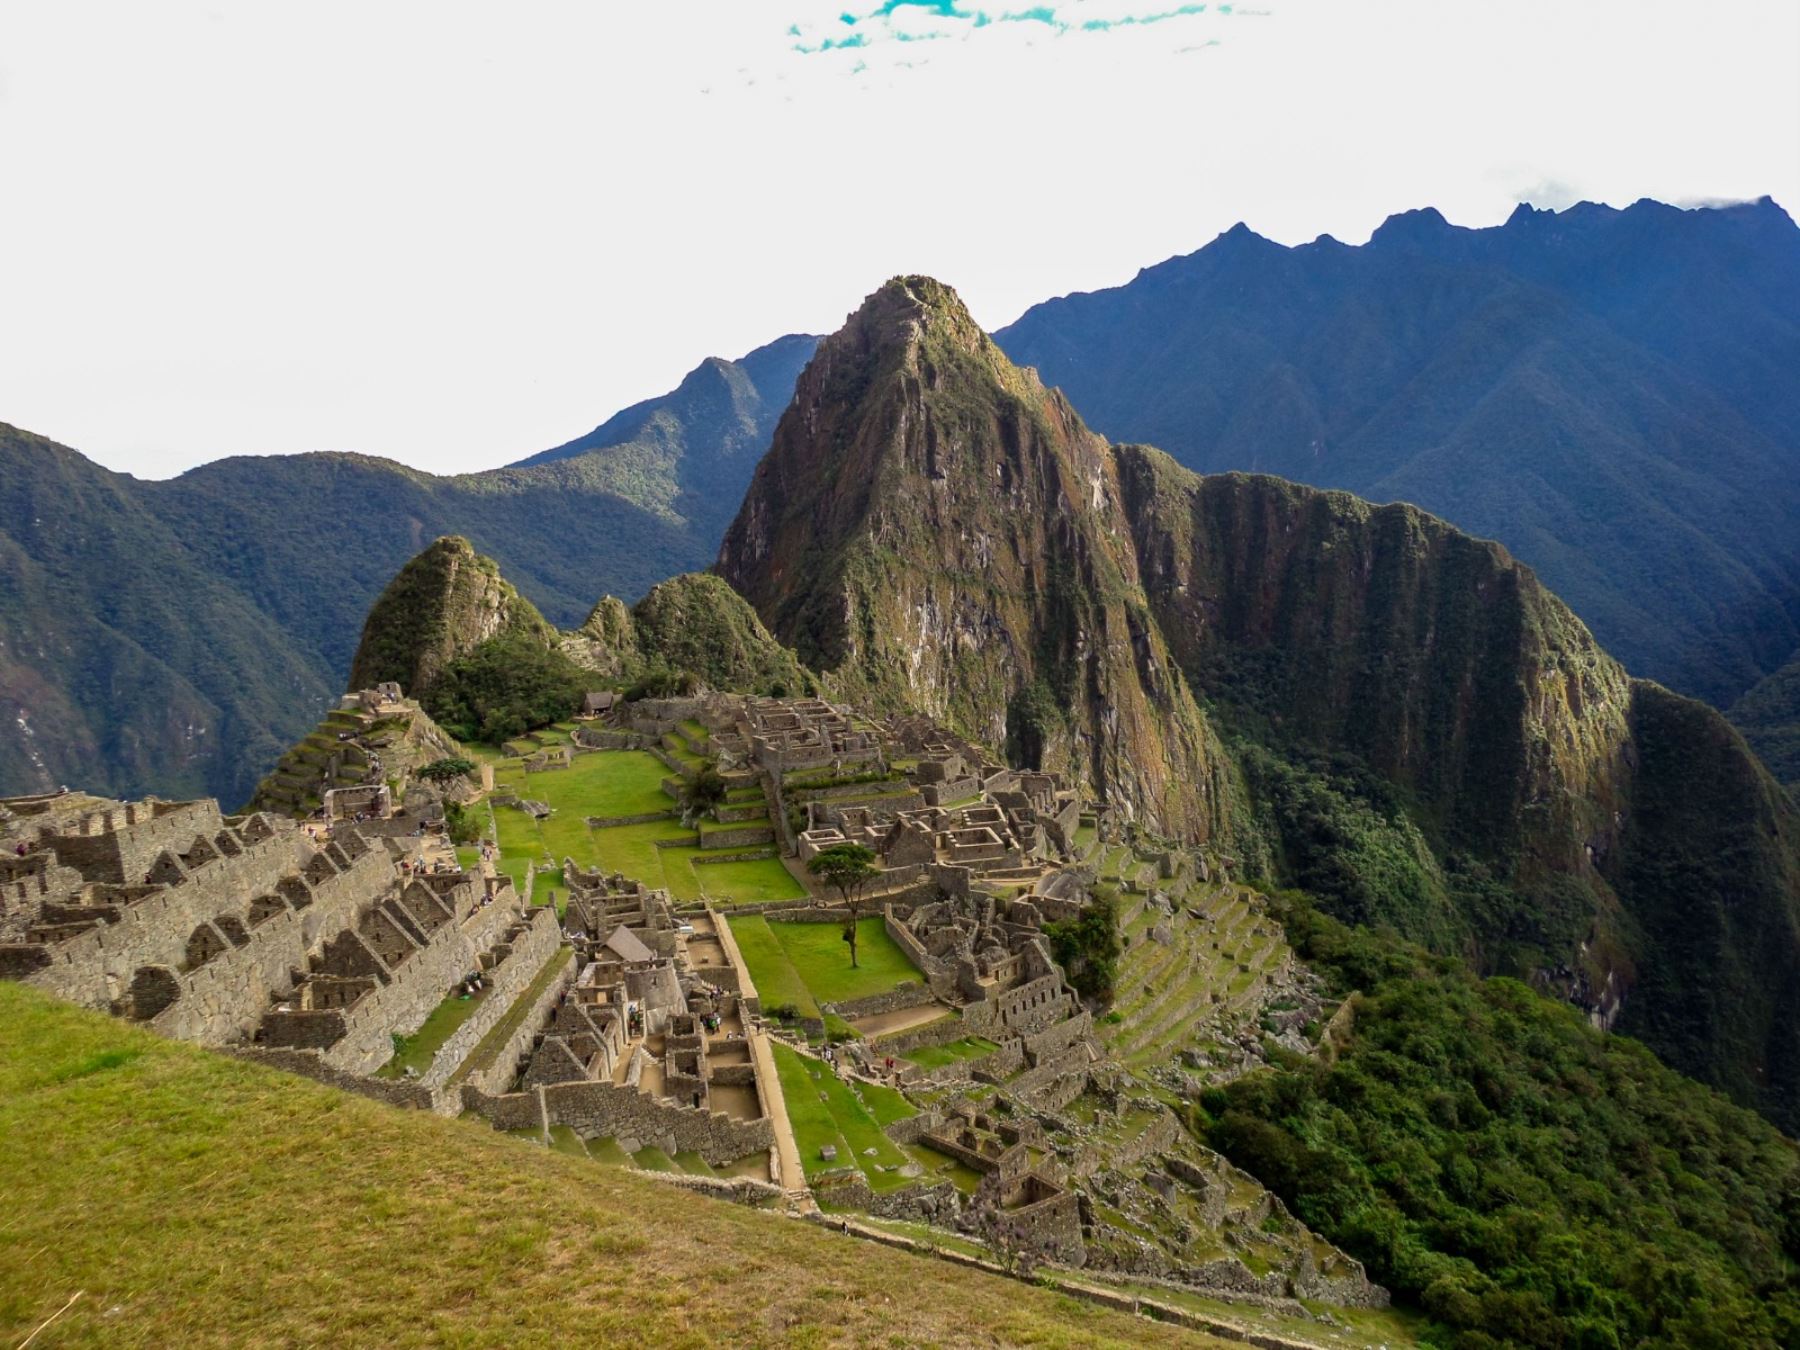 El próximo 24 de julio se conmemorará el 112 aniversario de la llegada a Machu Picchu, impresionante complejo urbano inca construido íntegramente en piedra sobre la cima de una escarpada montaña en la ceja selva de la región Cusco, por parte del explorador Hiram Bingham. ANDINA/Difusión